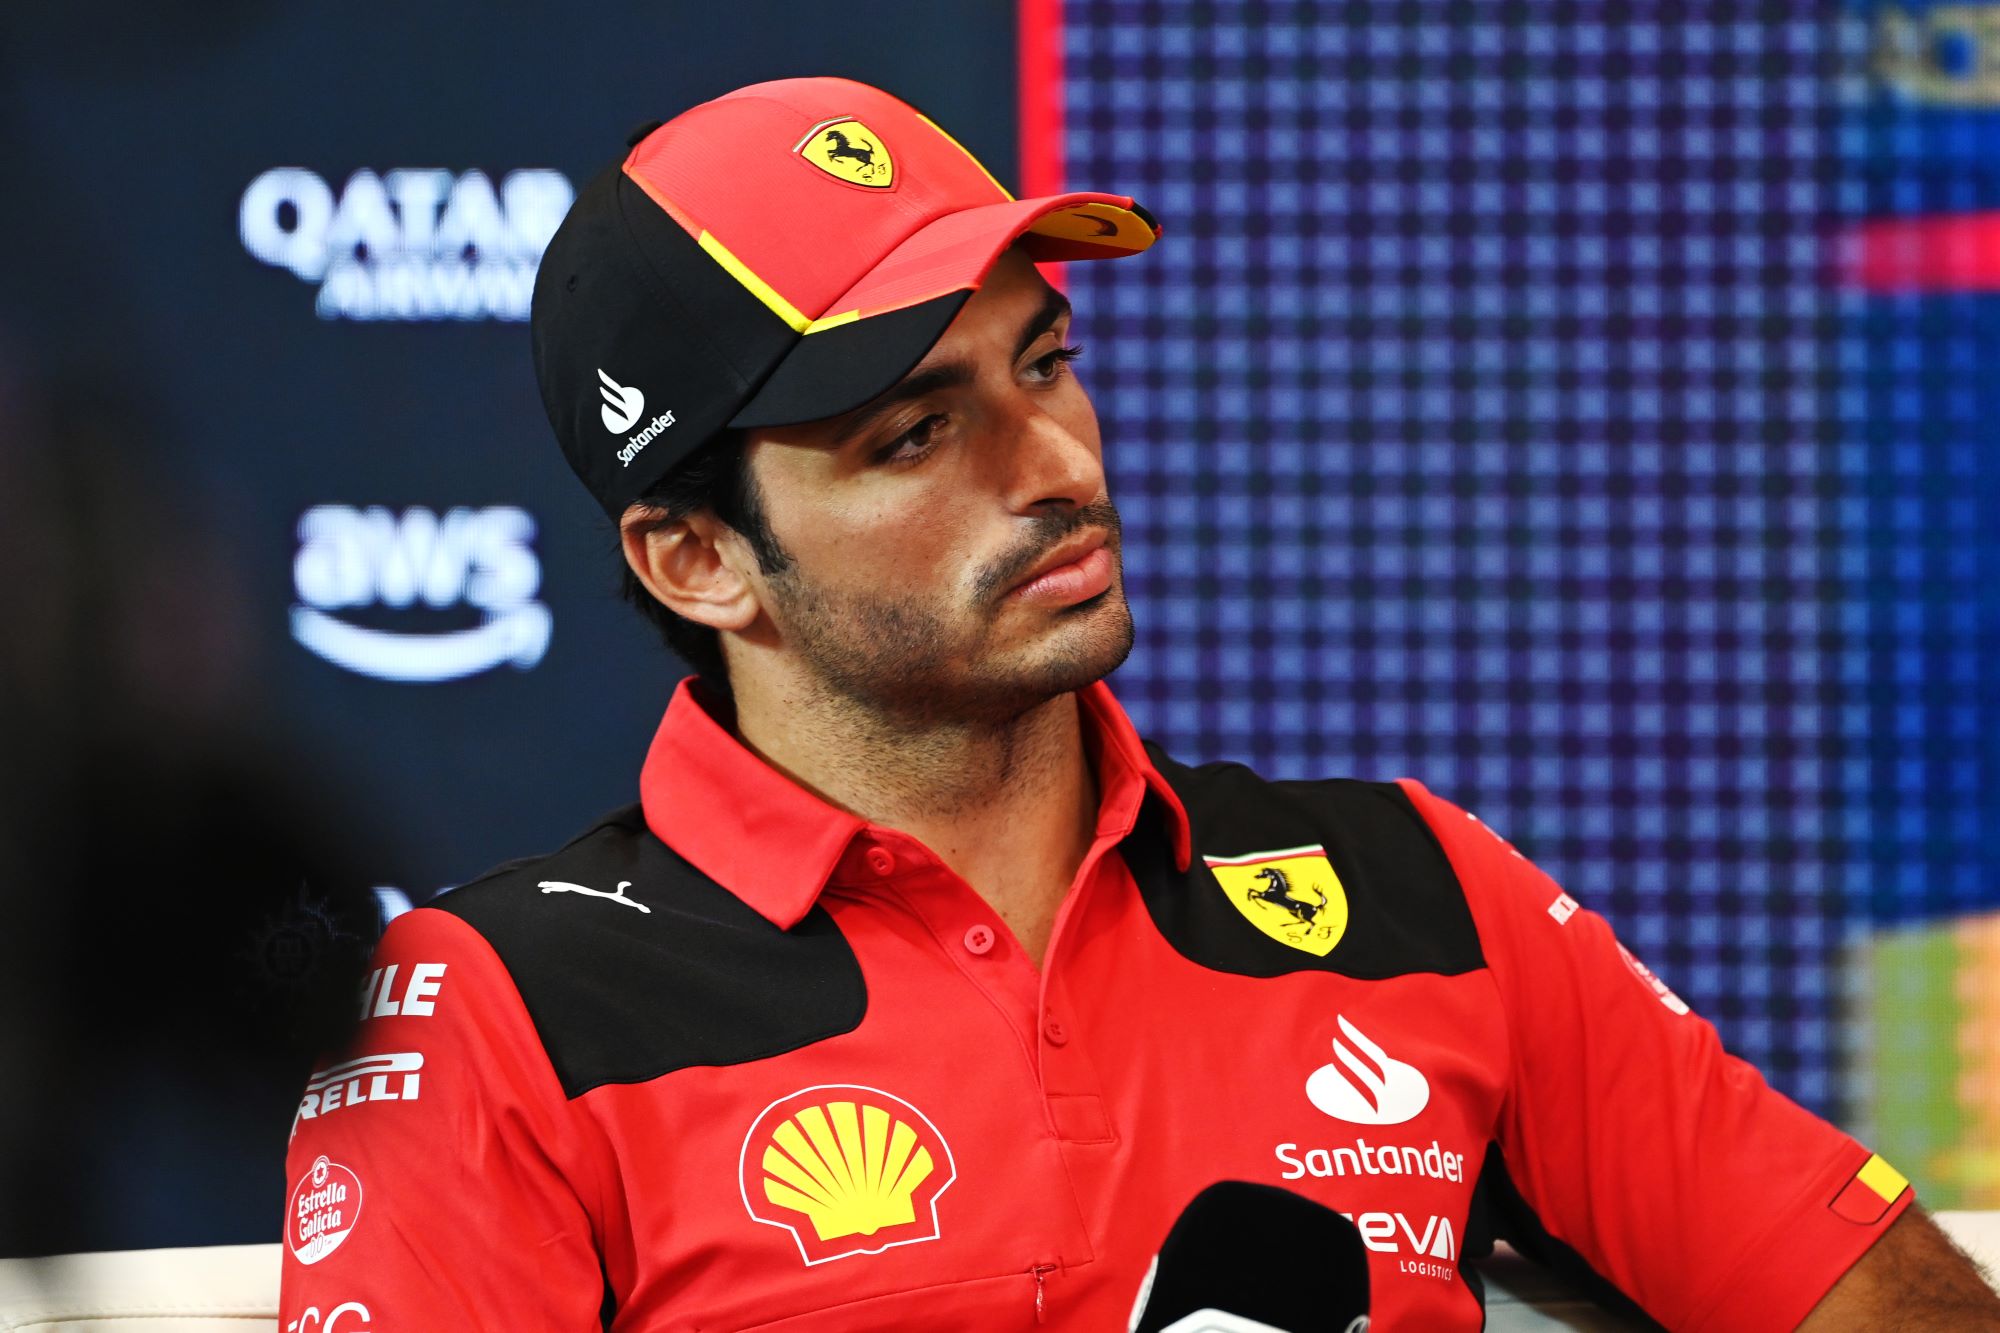 F1: Sainz revela sua preferência entre Hamilton e Verstappen como possível companheiro de equipe